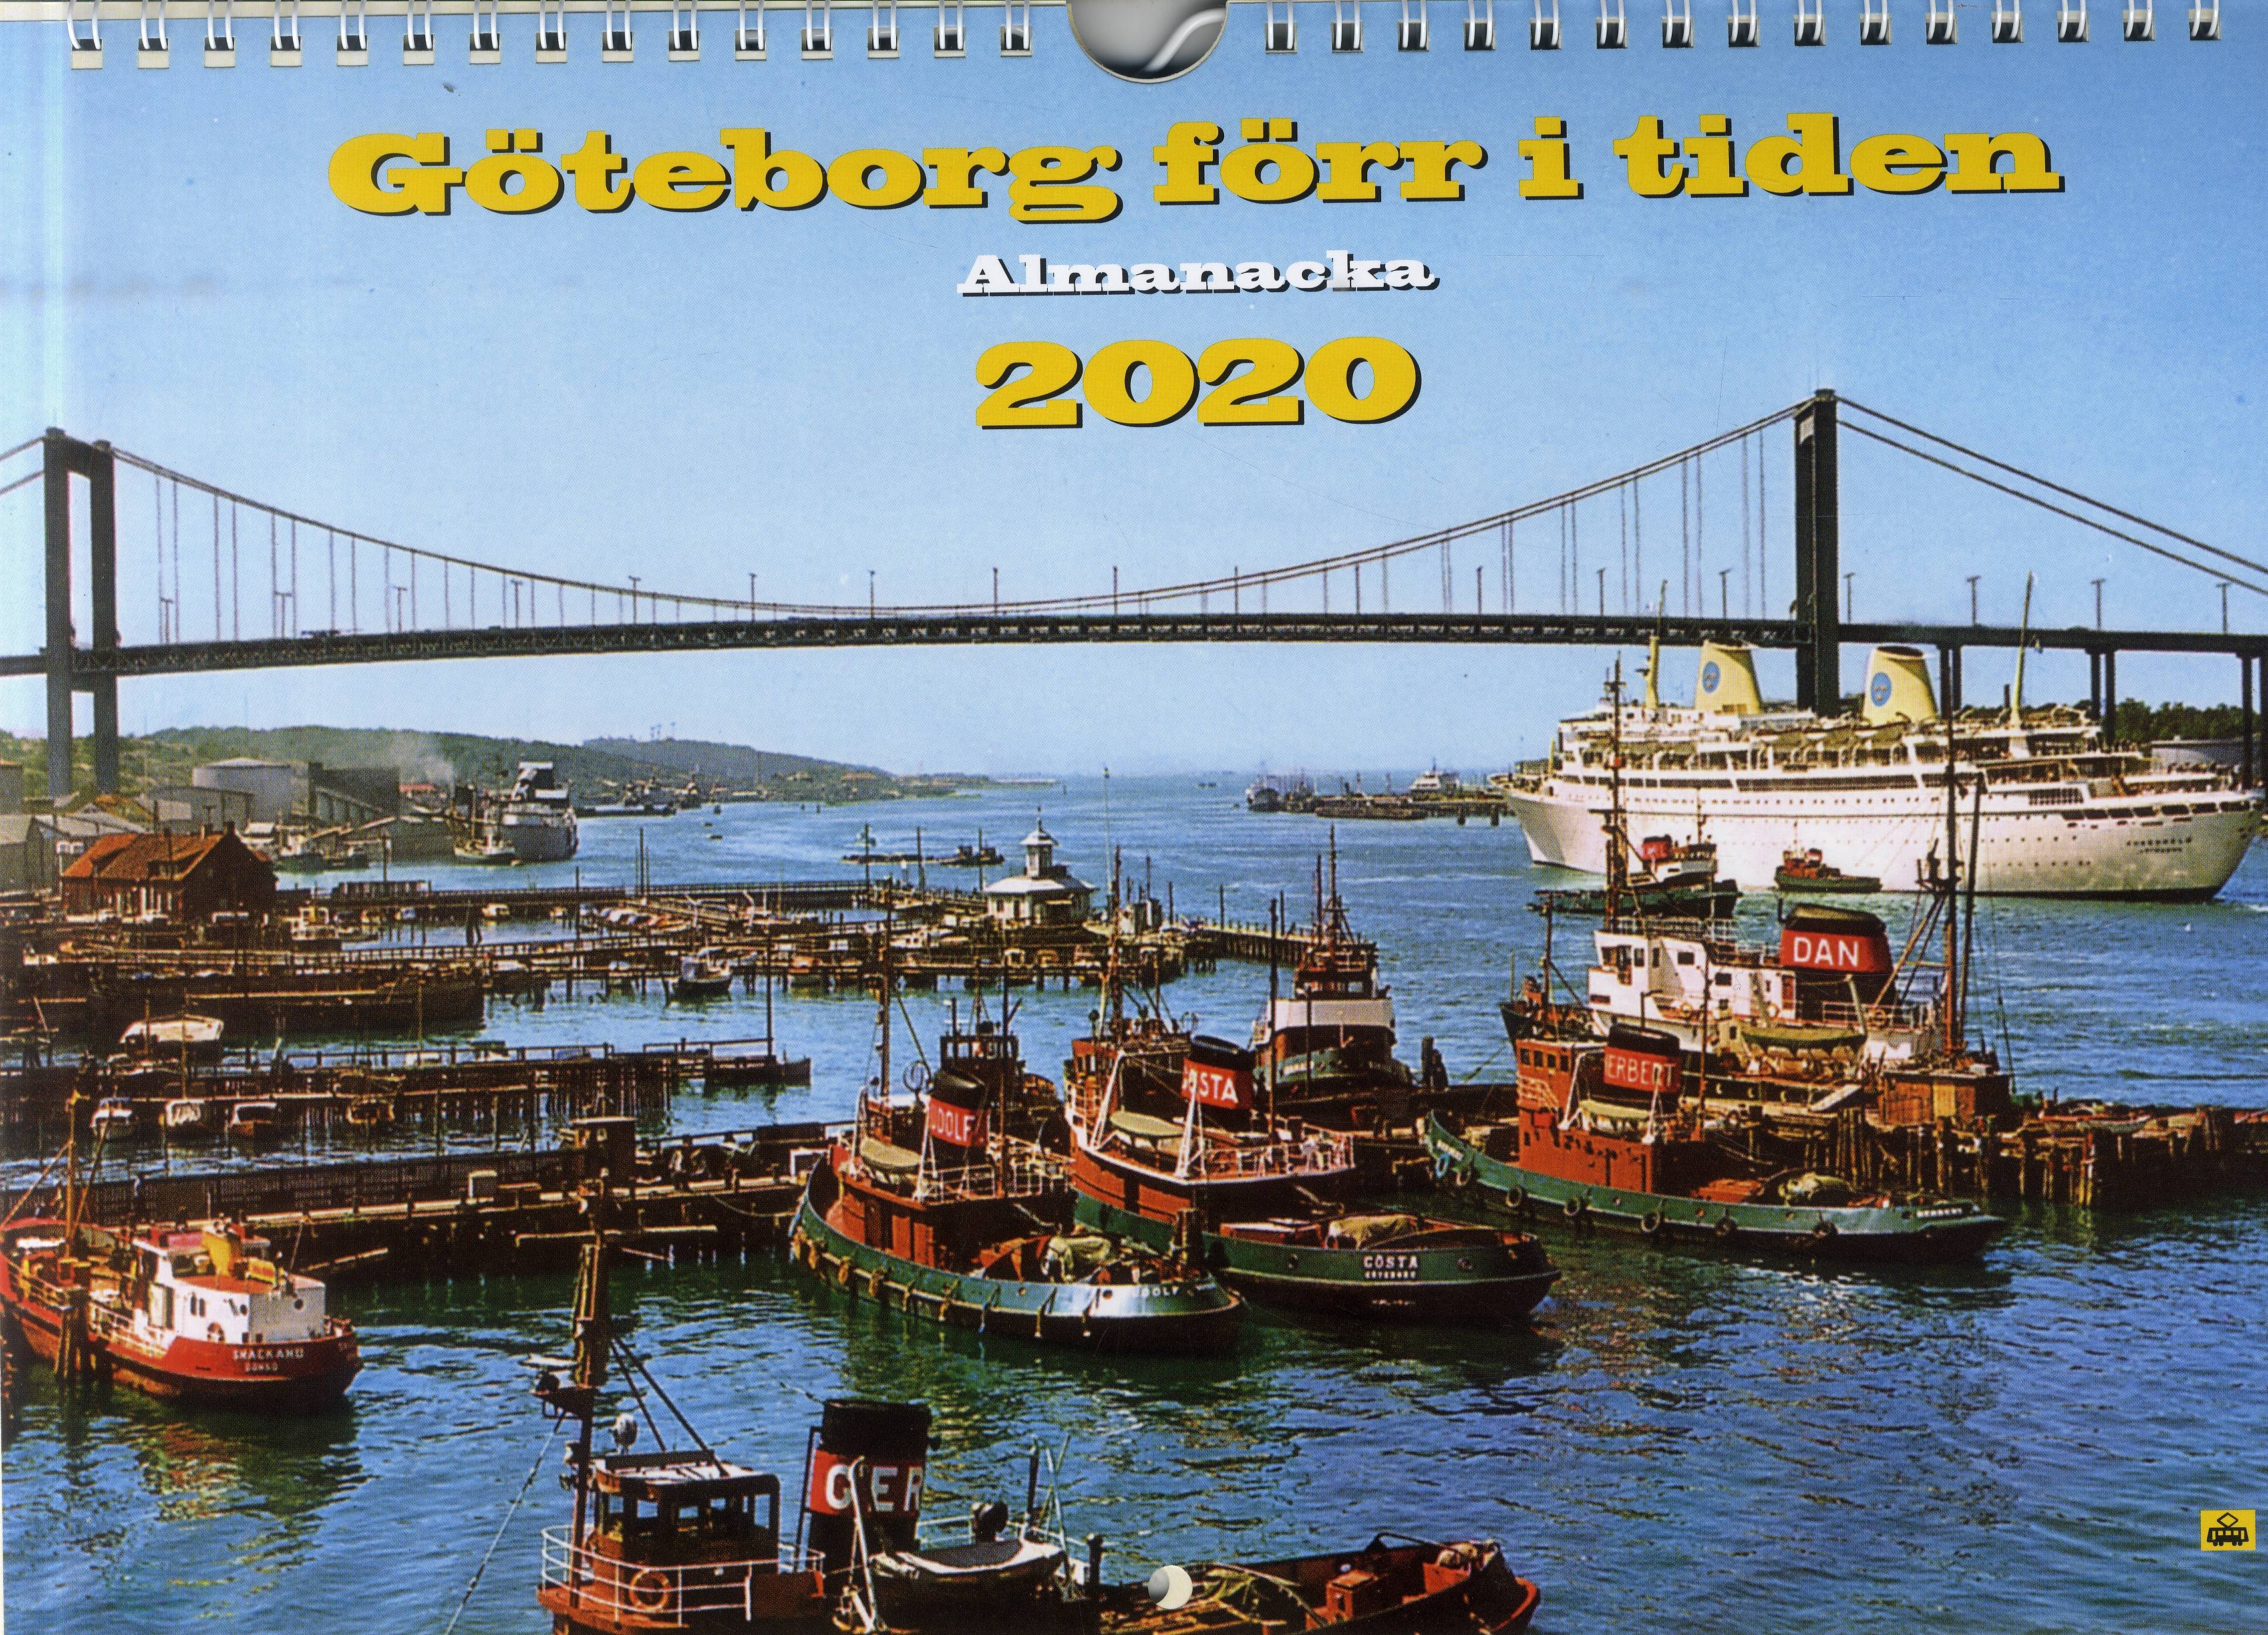 Göteborg förr i tiden 2020